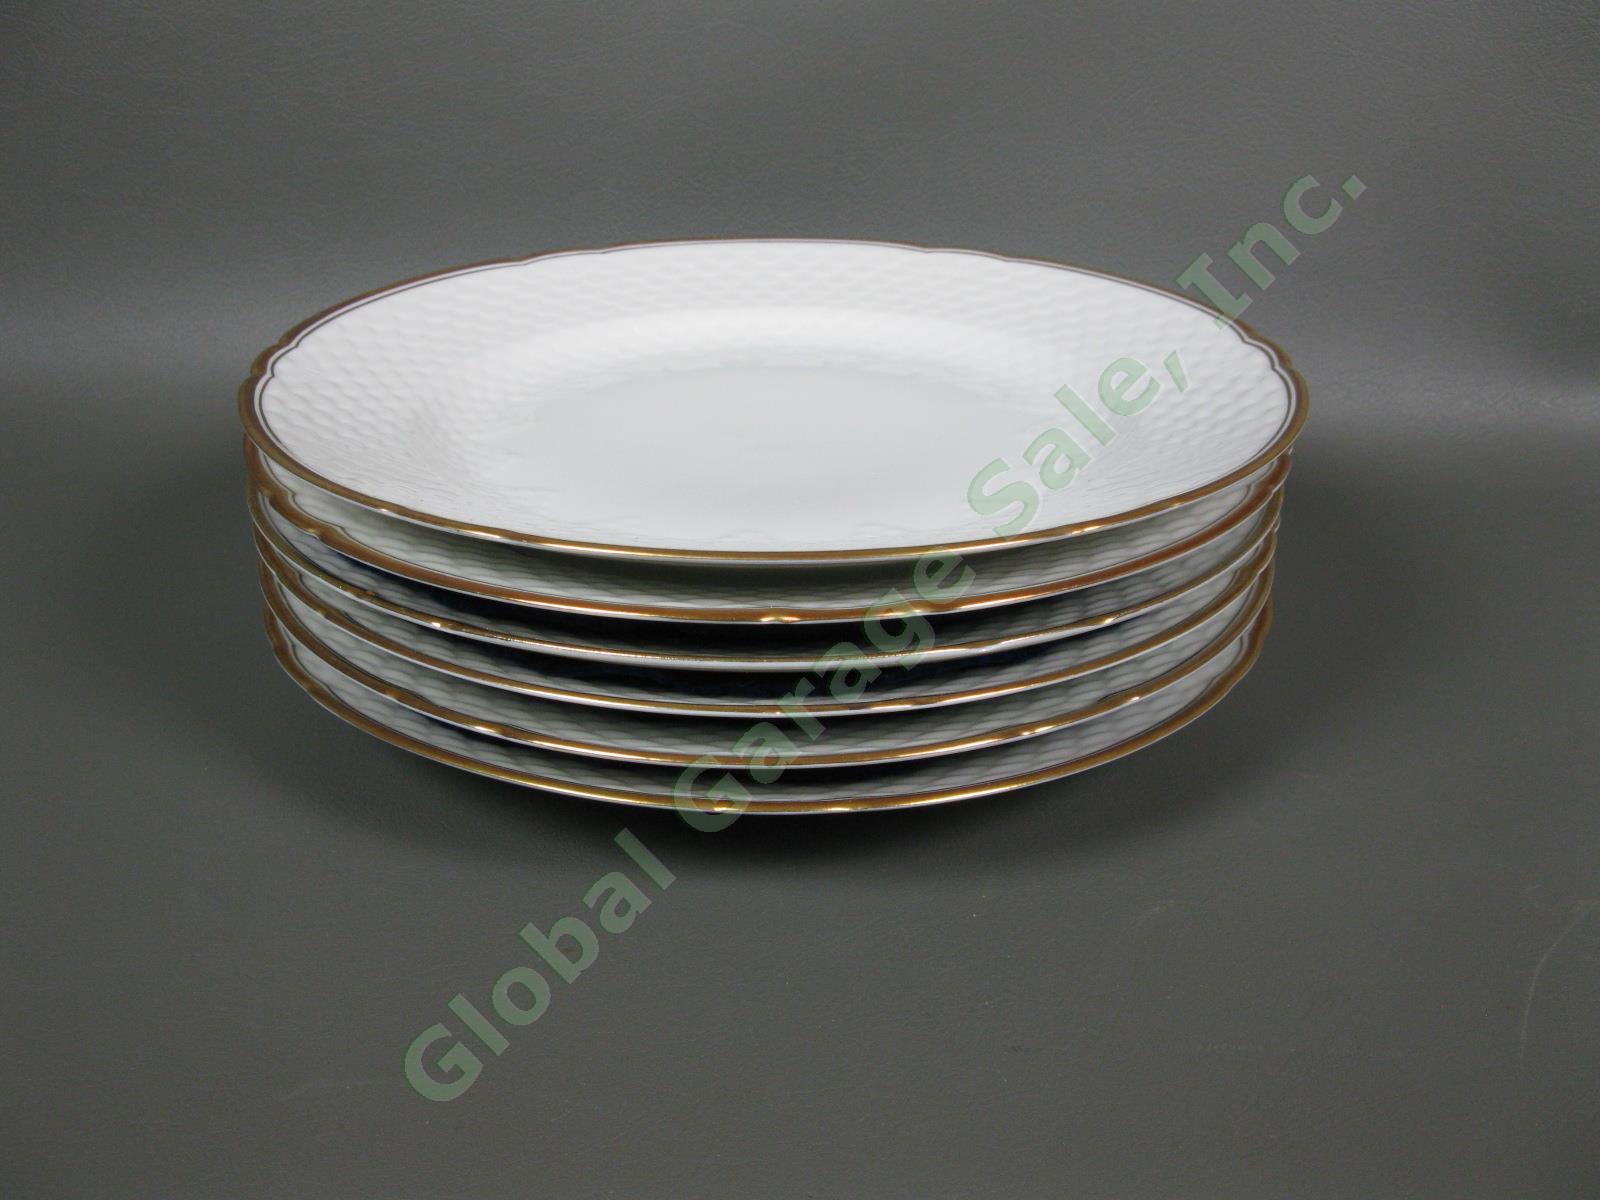 6 B&G Bing & Grondahl Akjaer 9-3/4" Dinner Plate Set White Scalloped Gold Rim NR 1